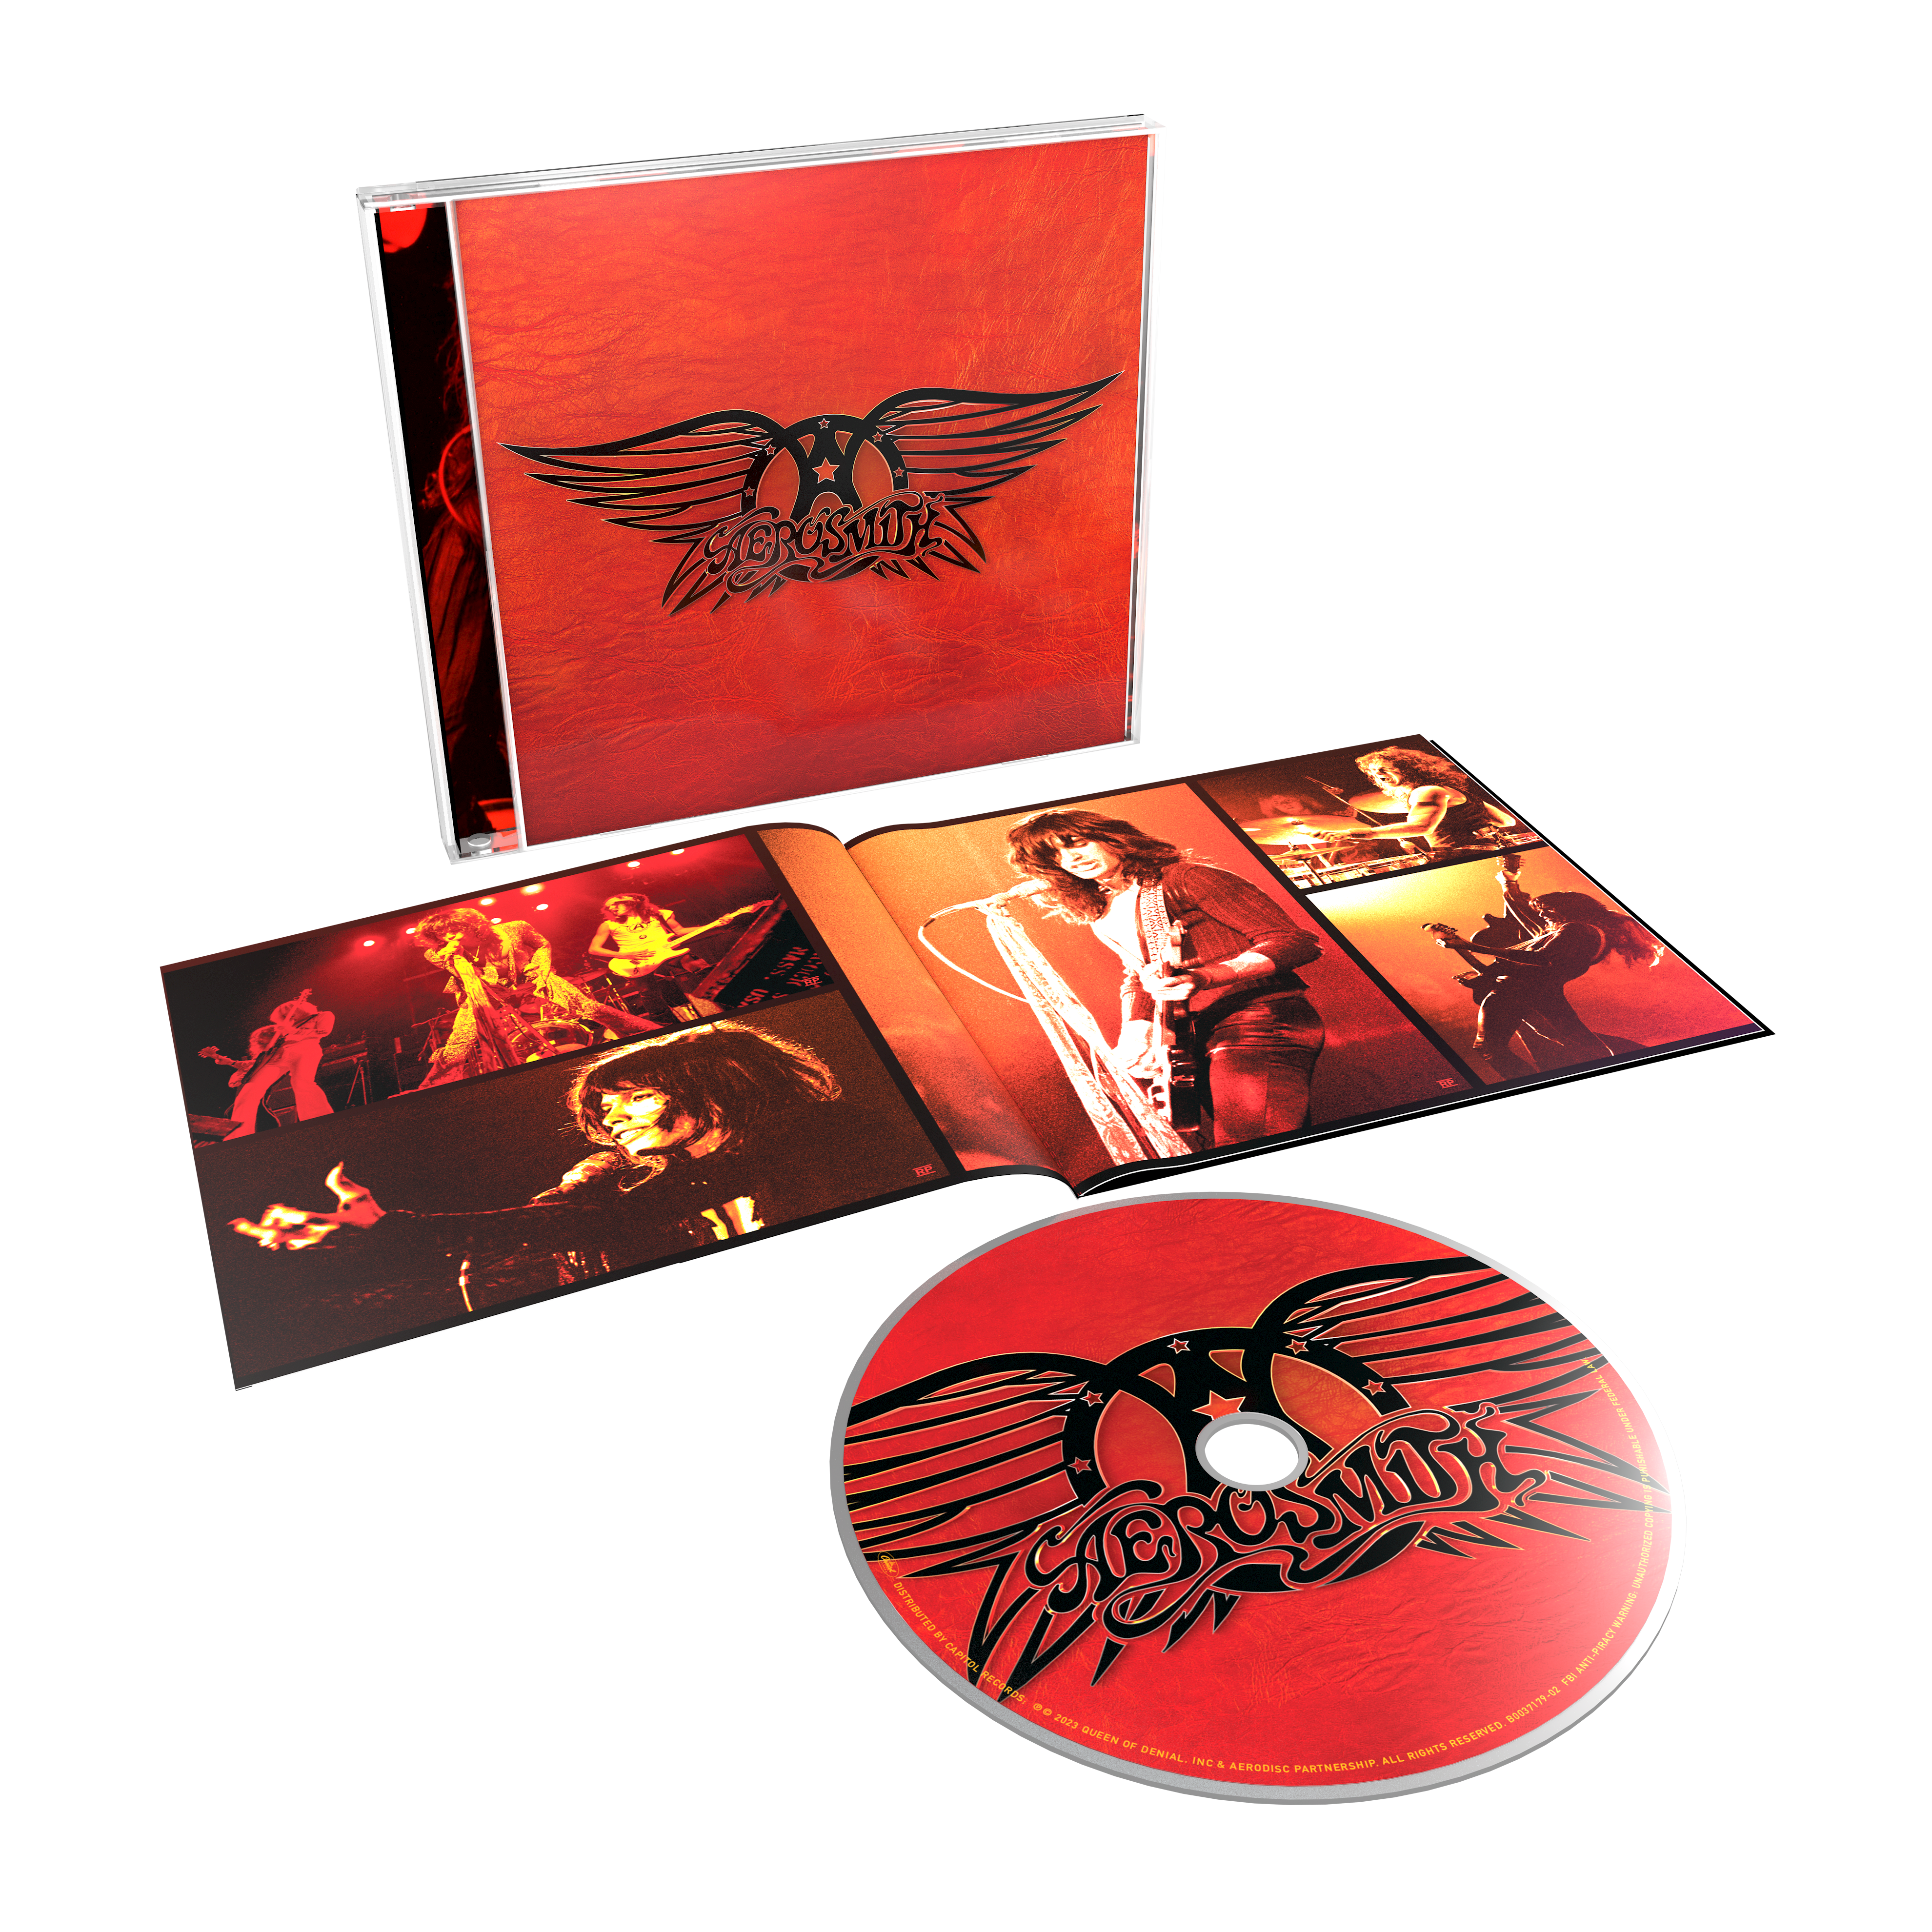 Aerosmith - GREATEST HITS CD